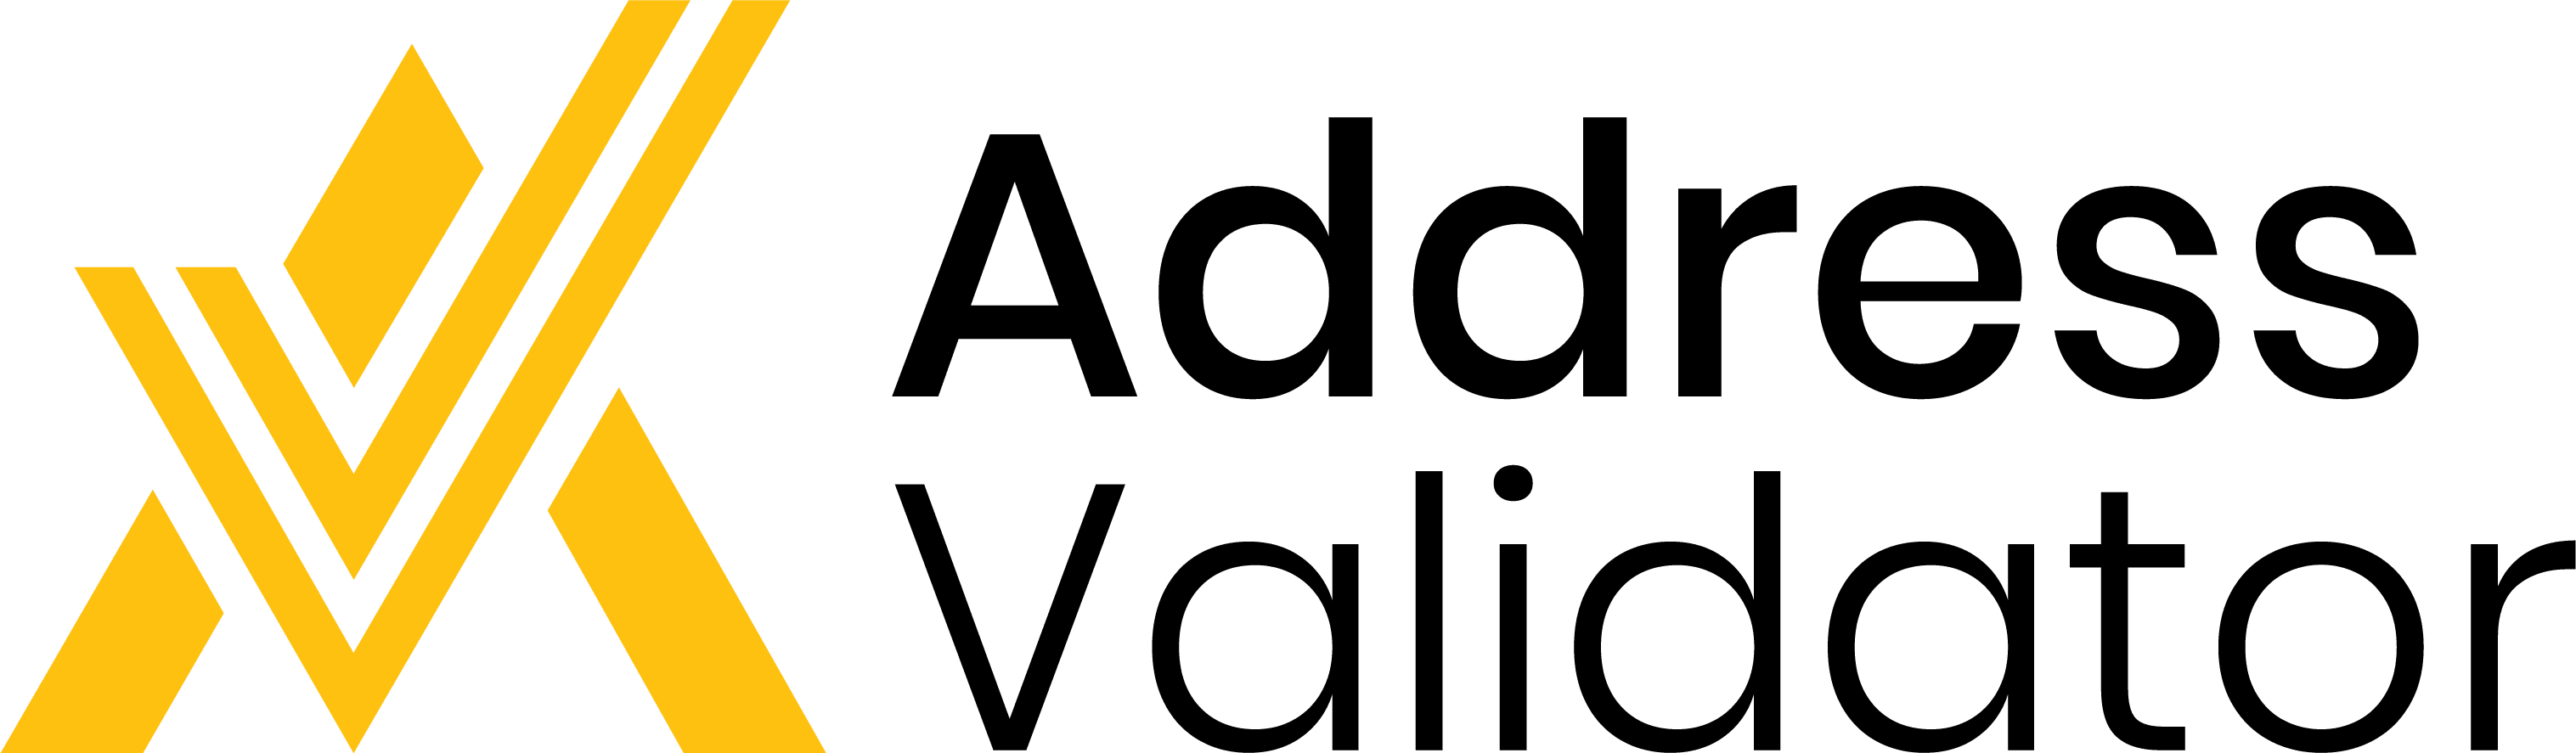 Address Validator App logo